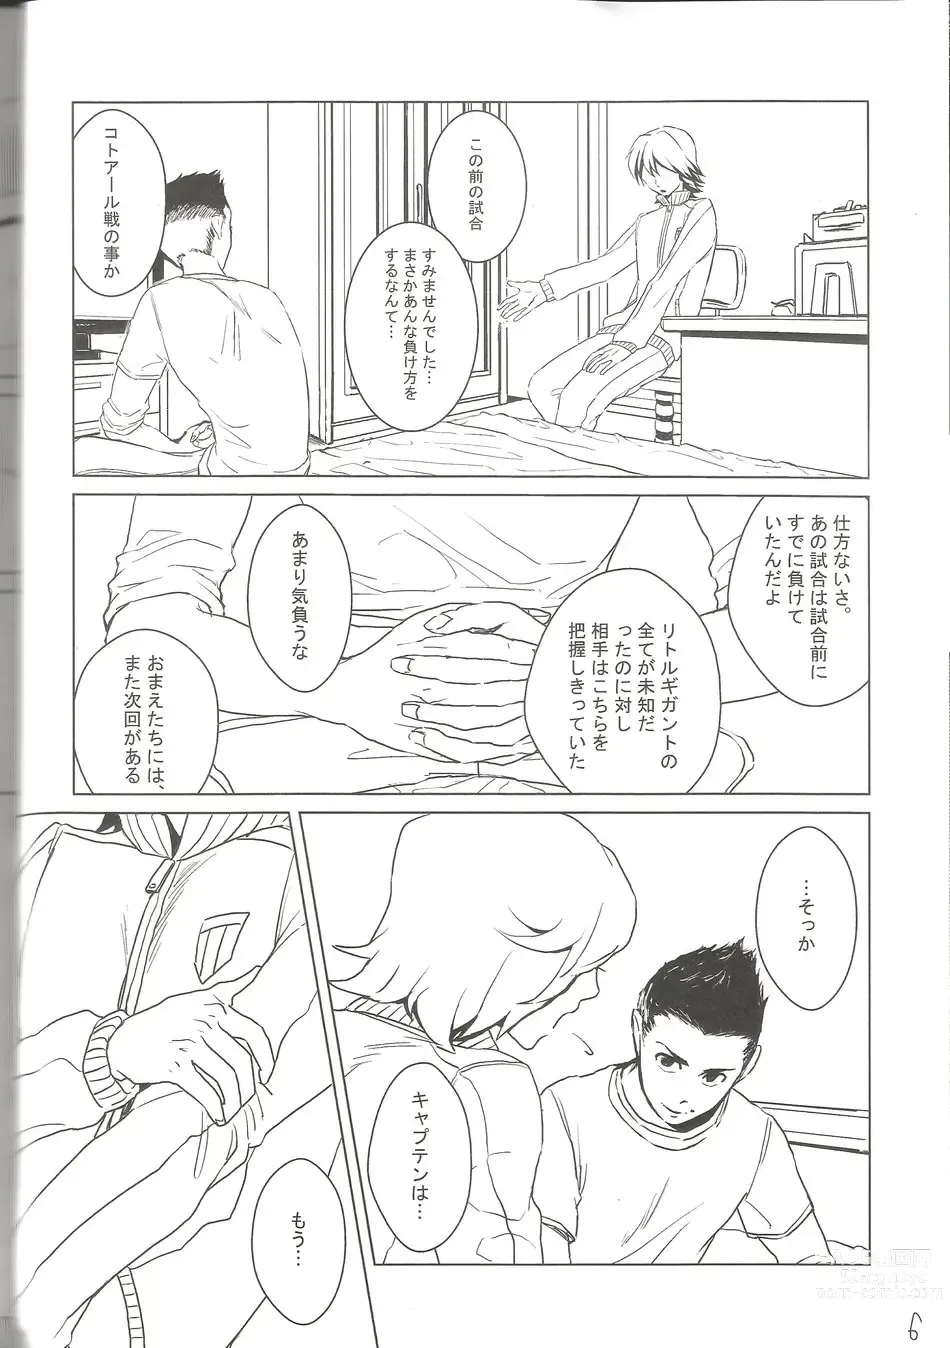 Page 5 of doujinshi BLU DAISY